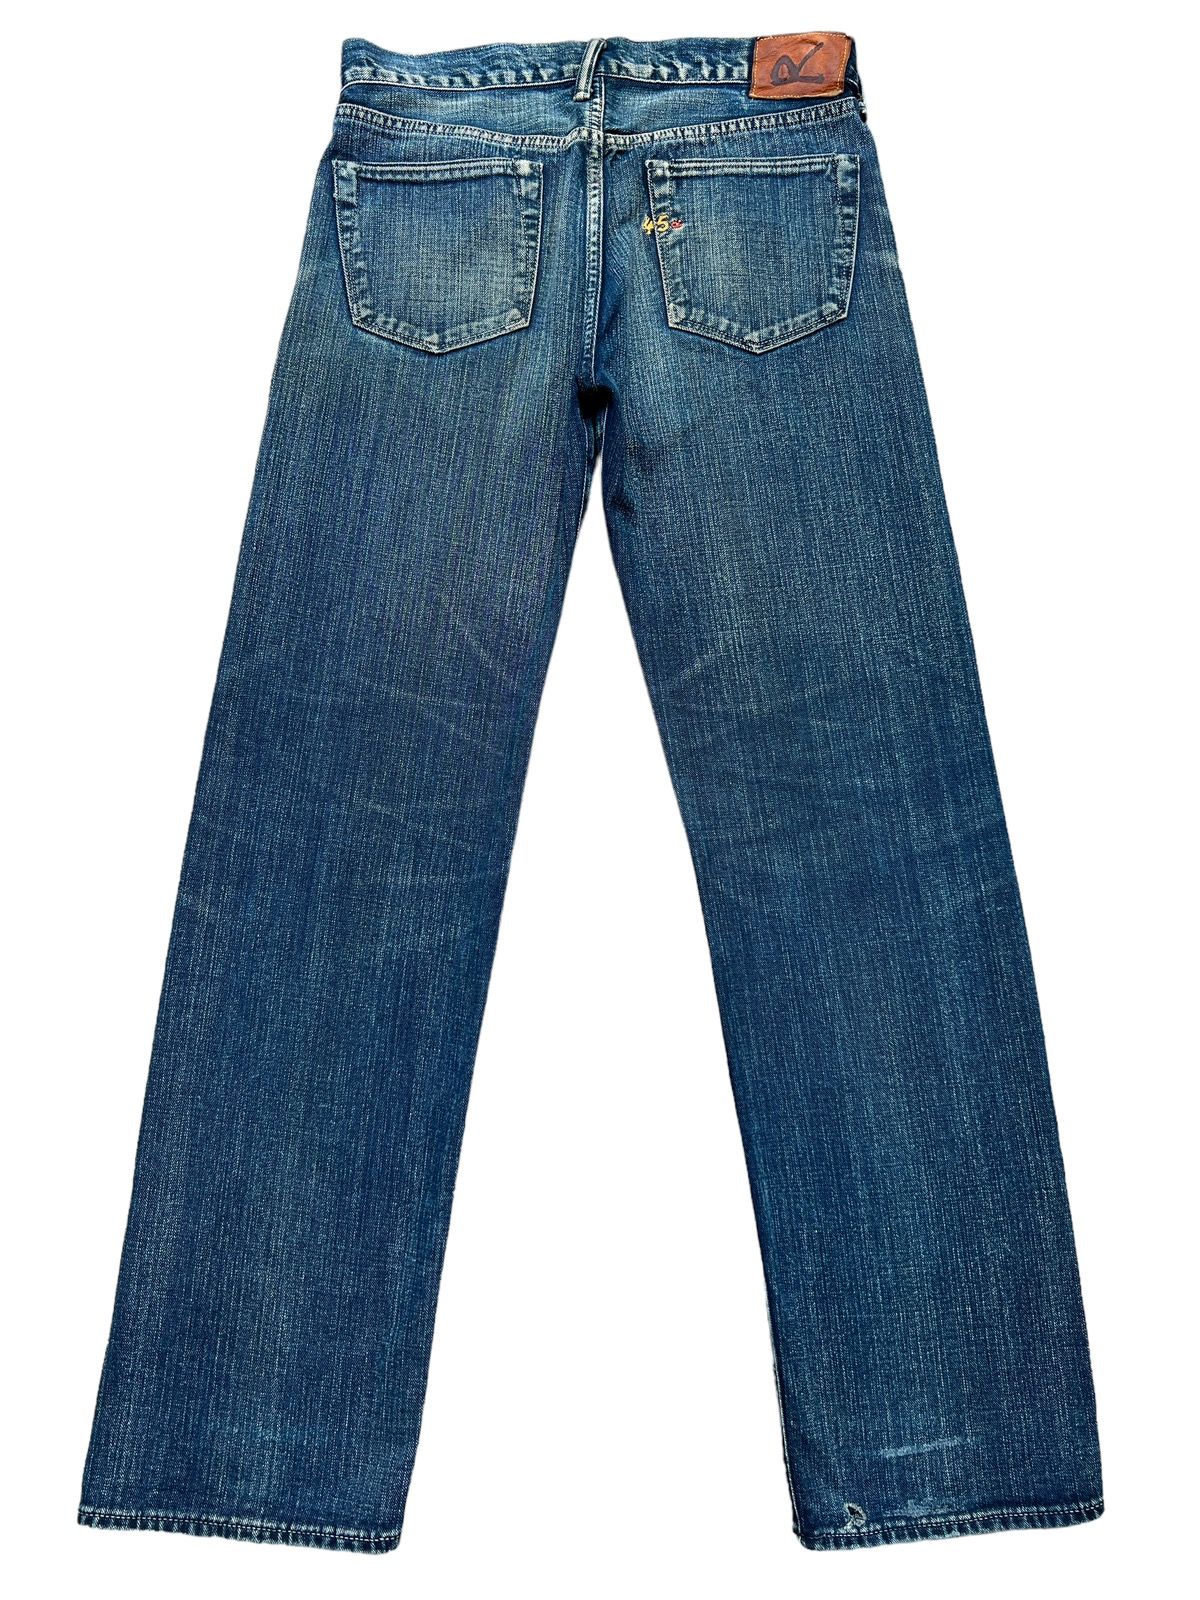 Vintage 45RPM Japan Faded Mudwash Denim Jeans 33x33 - 2